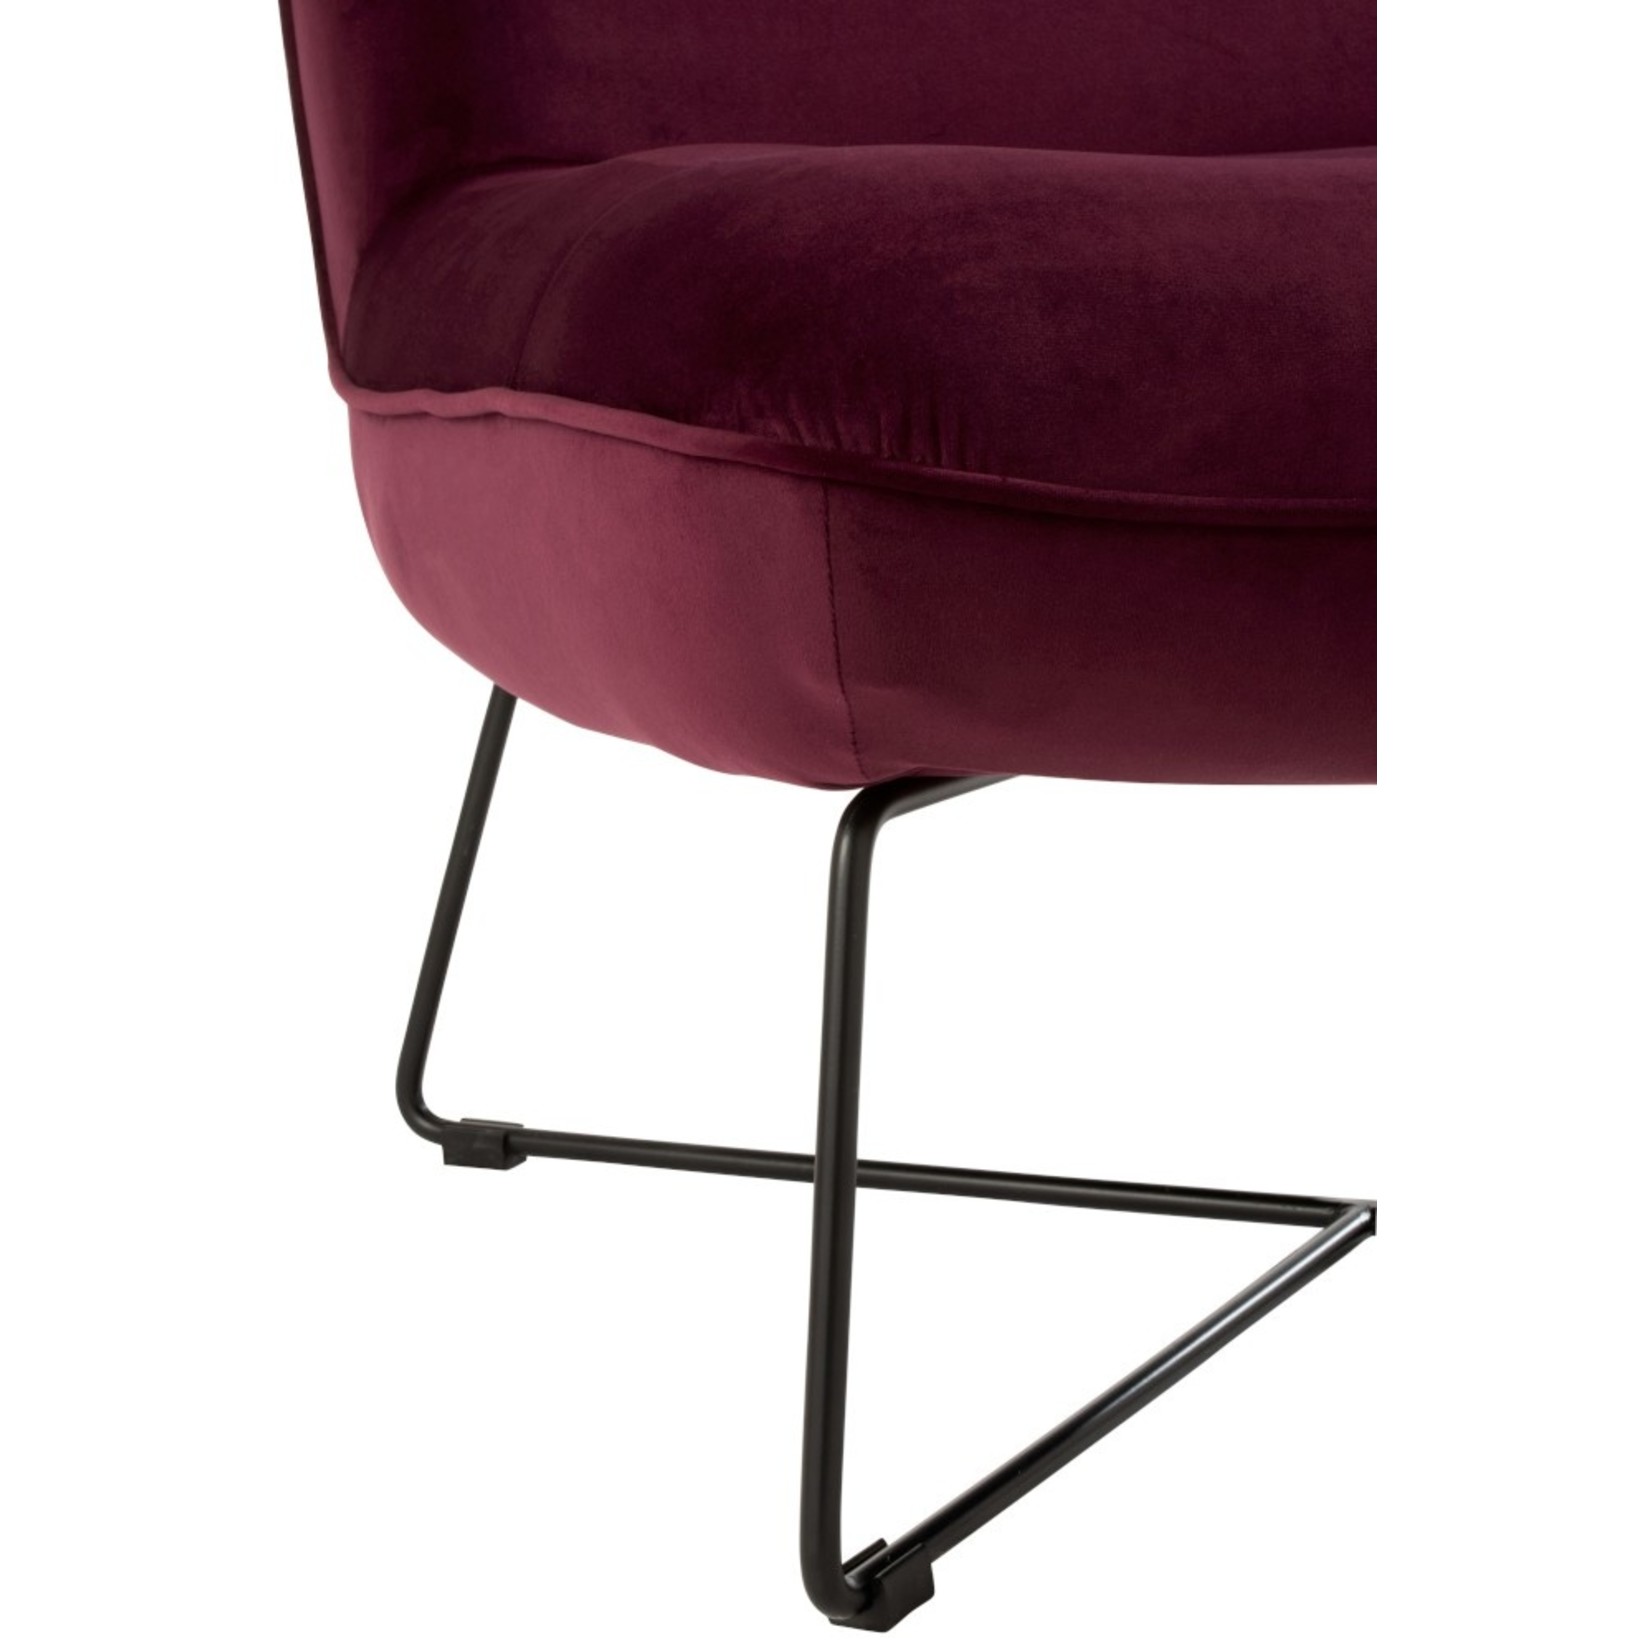 J-Line Relaxing Chair Crossed Frame Metal - Burgundy